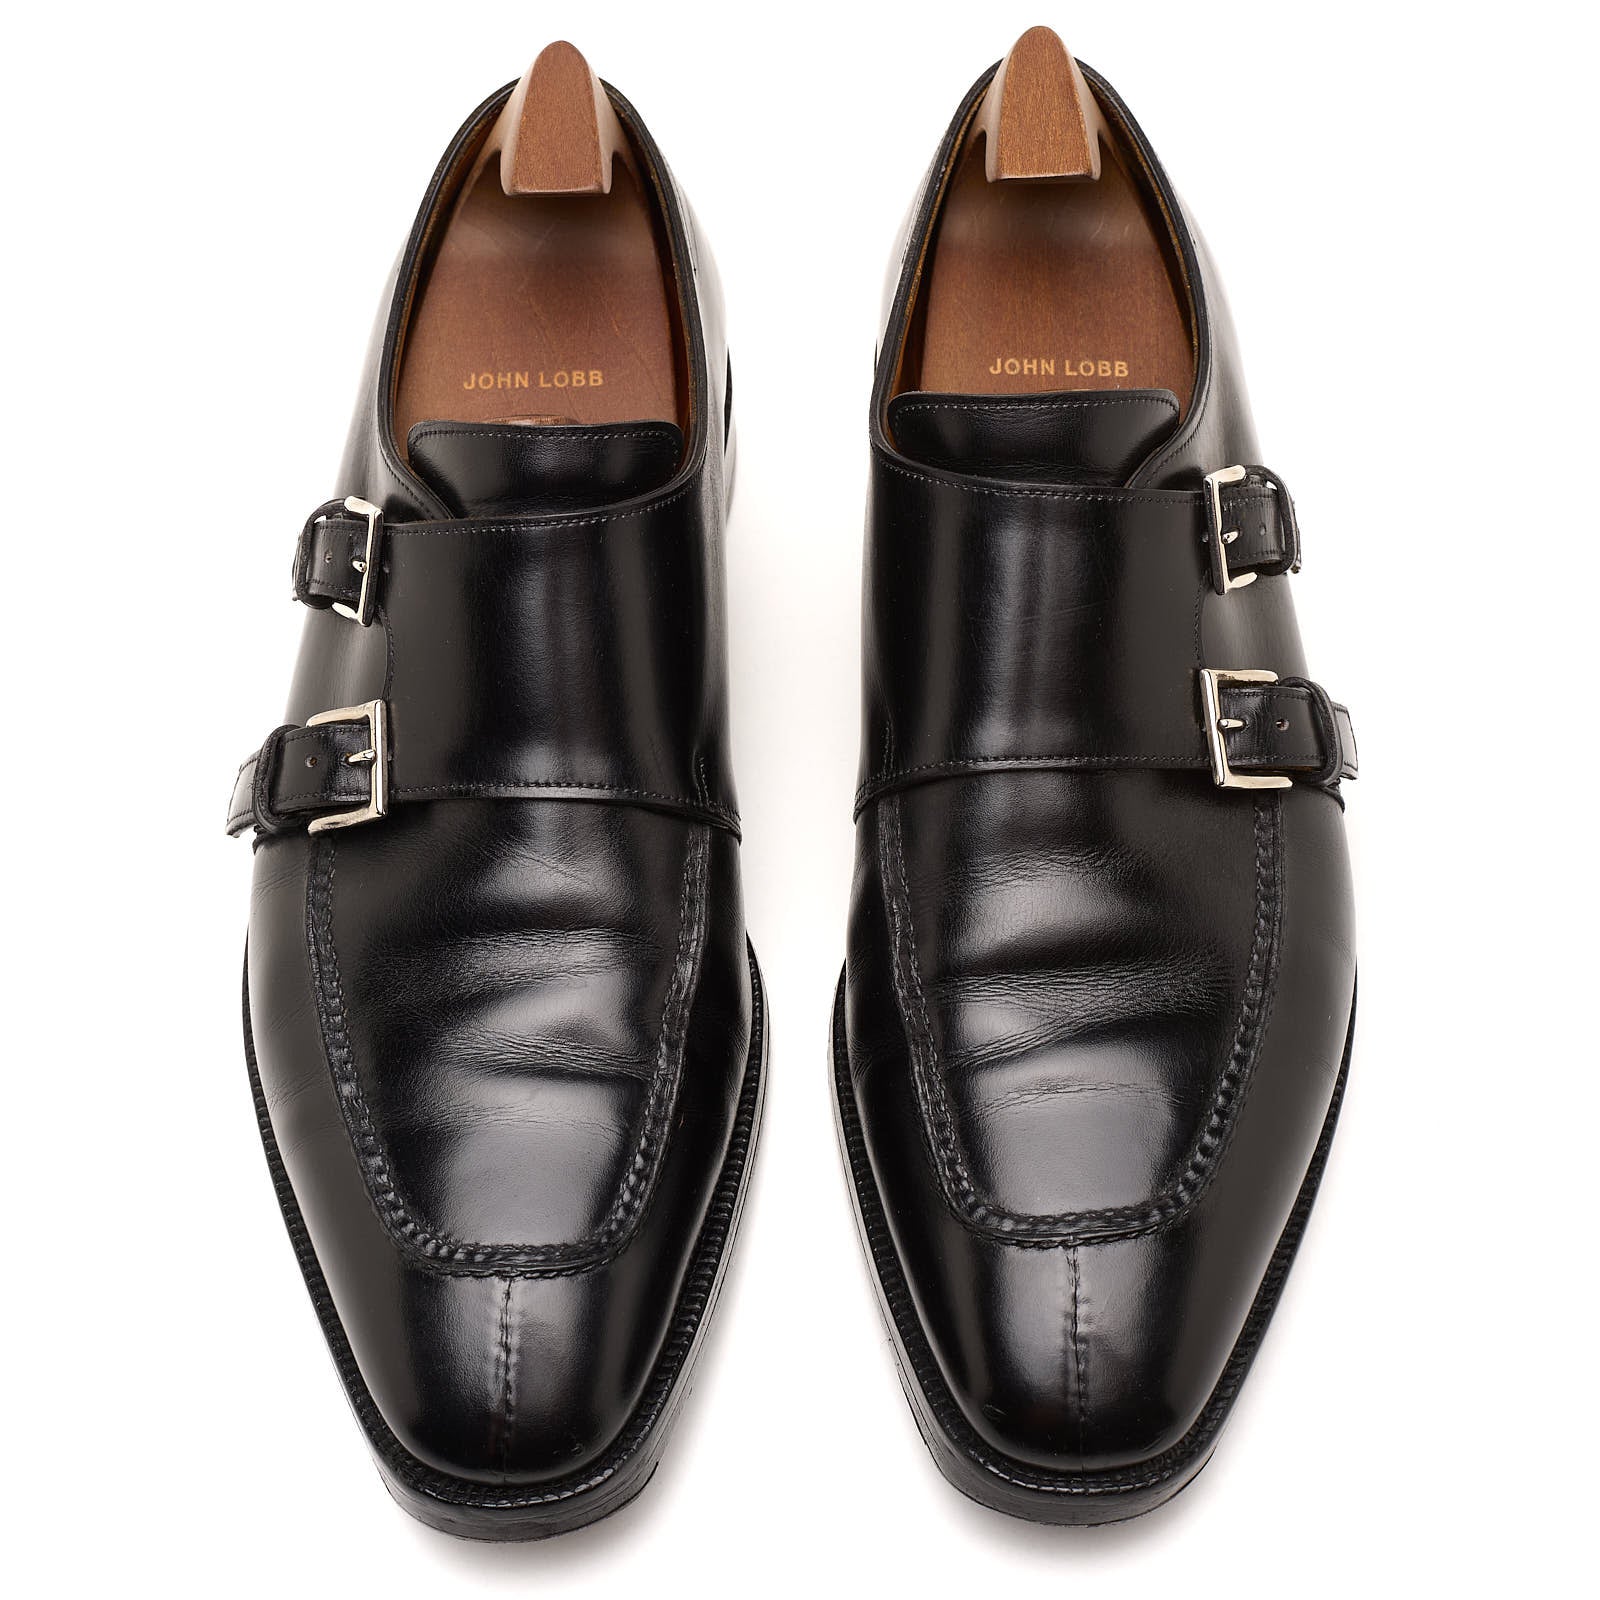 John Lobb Shoes for Men at Sartoriale